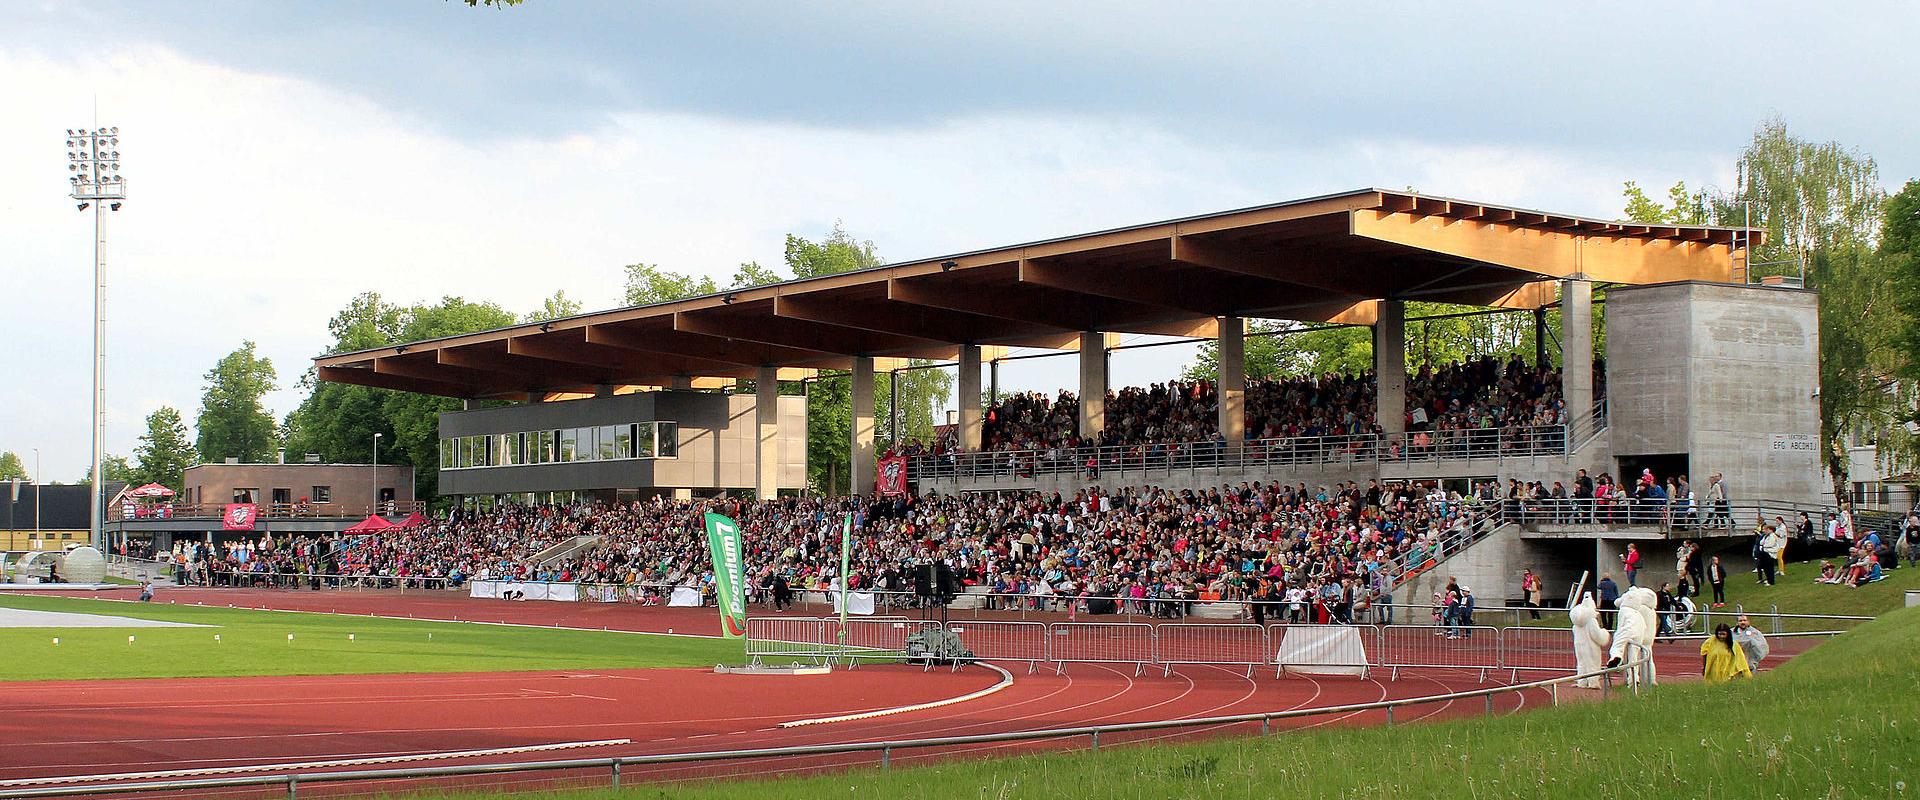 Schlittschuhplatz des Tamme-Stadions